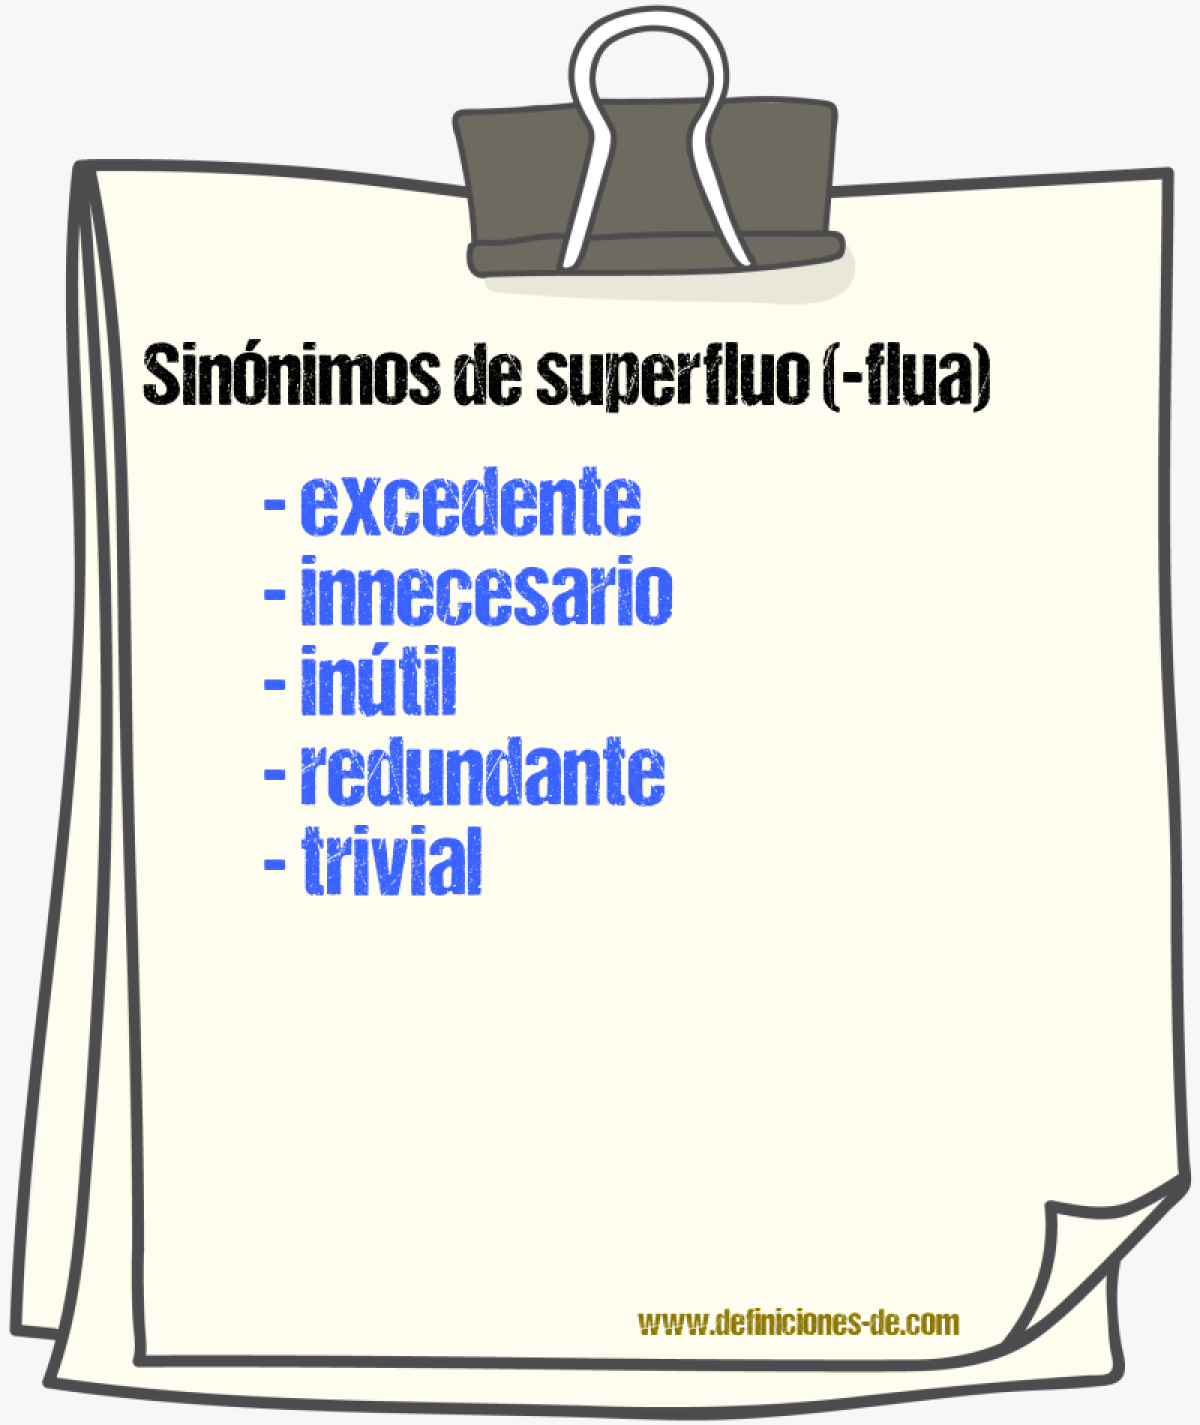 Sinónimos de superfluo